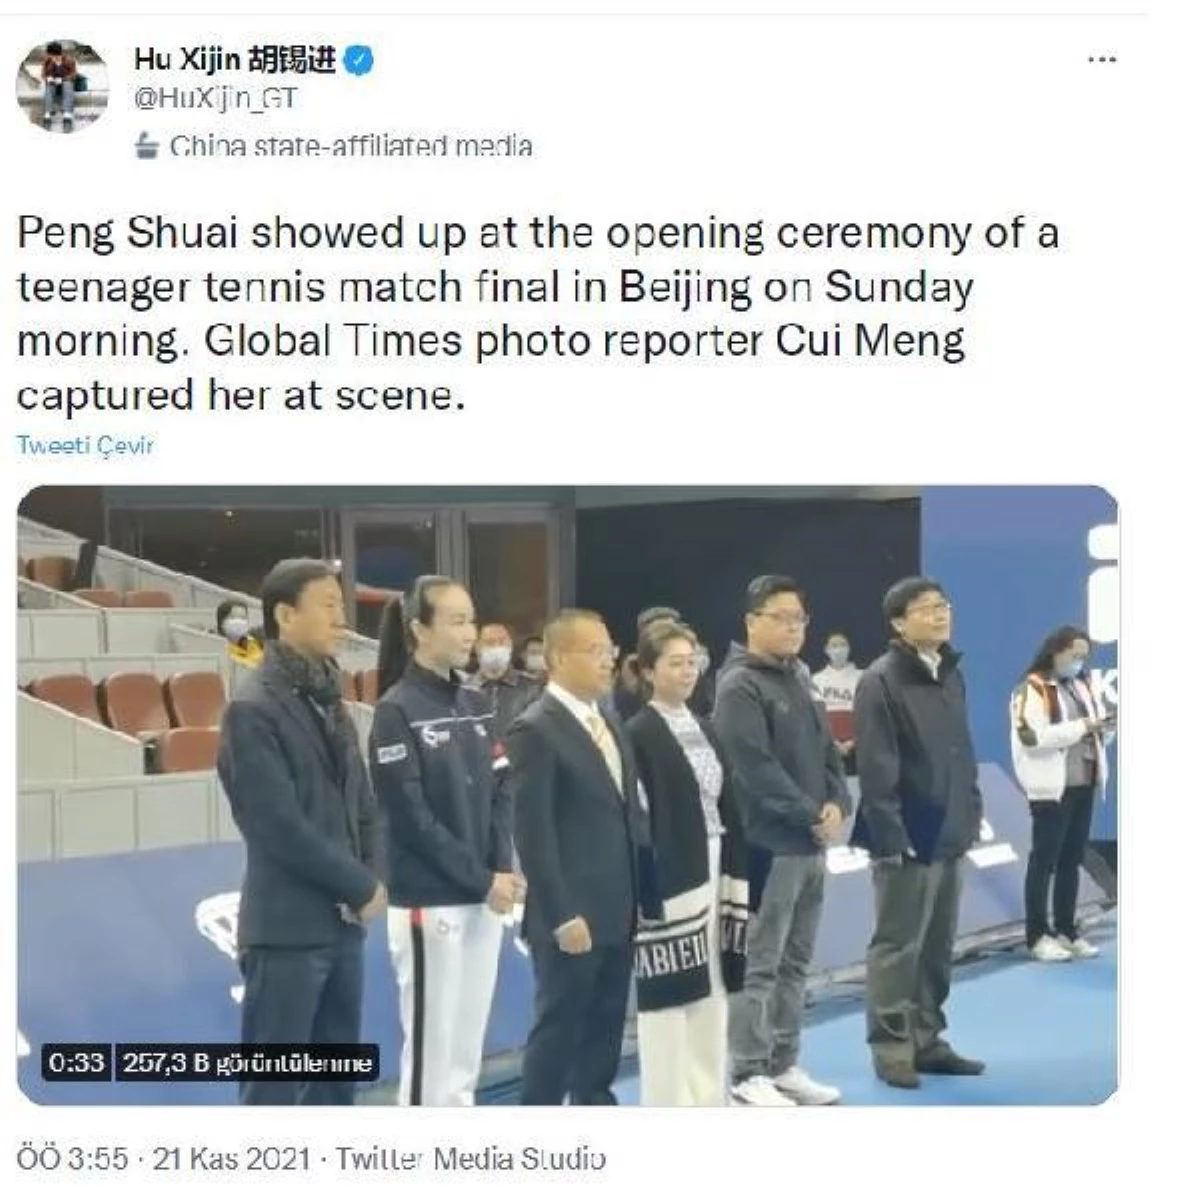 Çin devlet medyası, kayıp tenisçinin \'yaşam kanıtı\' görüntülerini paylaştı